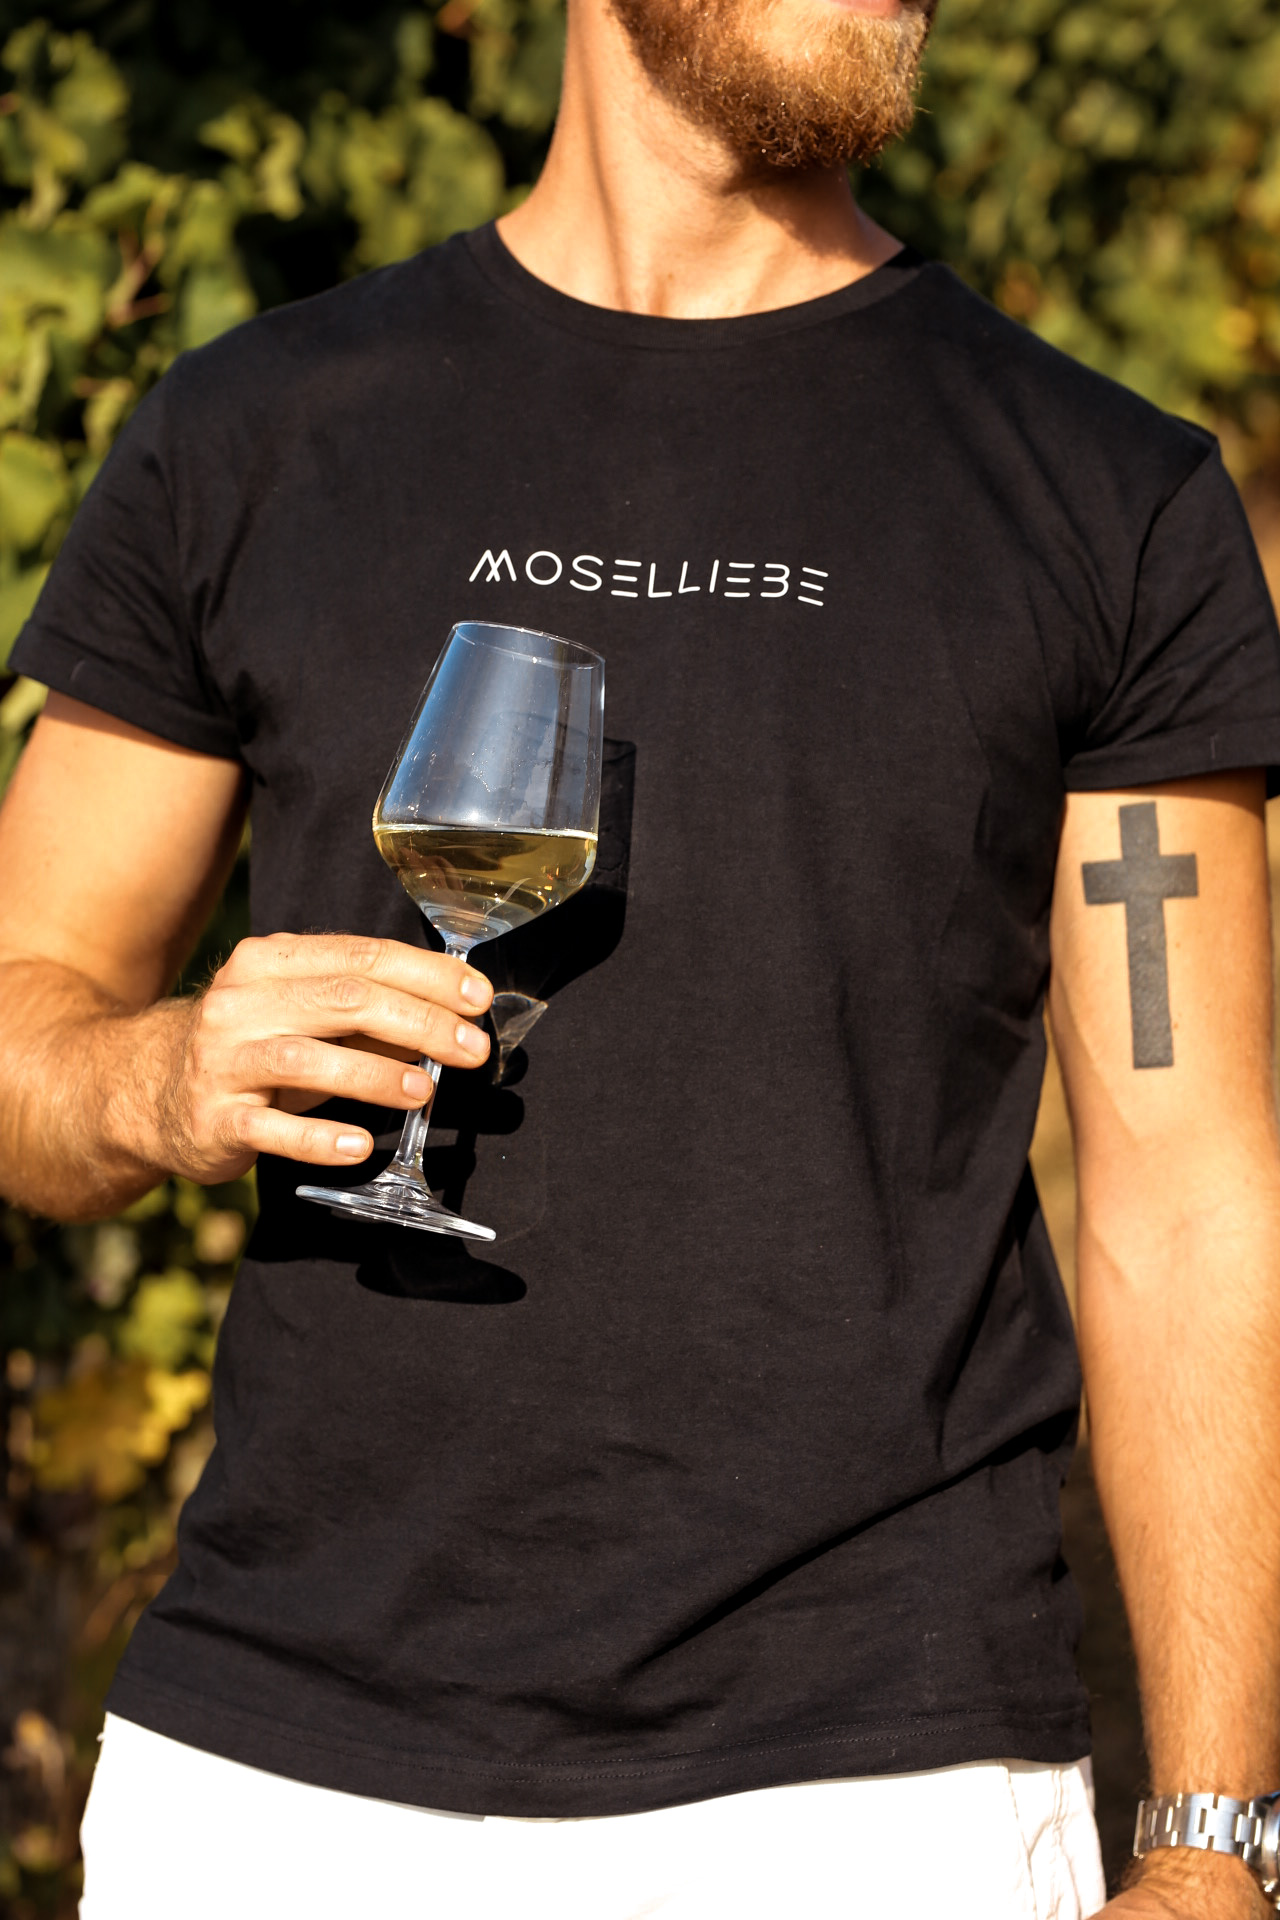 Die Liebe zur Mosel stolz auf der Brust - Shirts von Printabell Moselliebe Moseltal Moselland wein Weingut Weingüter Riesling Mosel Heimatliebe